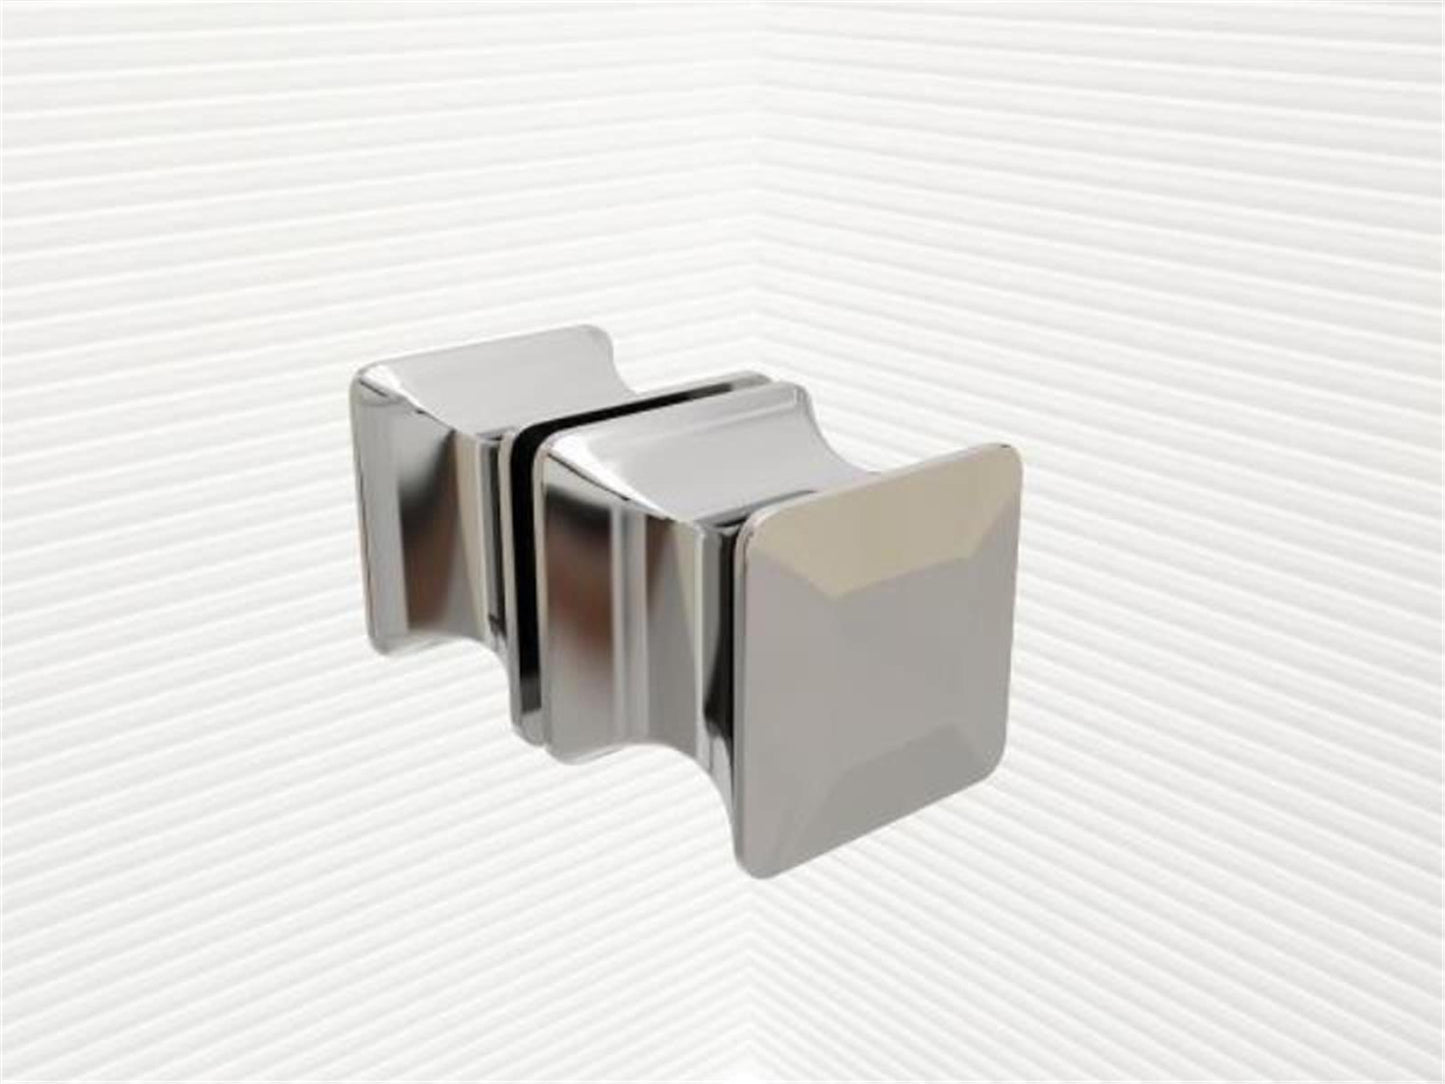 GlasHomeCenter - U-Duschkabine "Asuka" (90x75x195cm) - 8mm - Eckduschkabine - Duschabtrennung - ohne Duschtasse